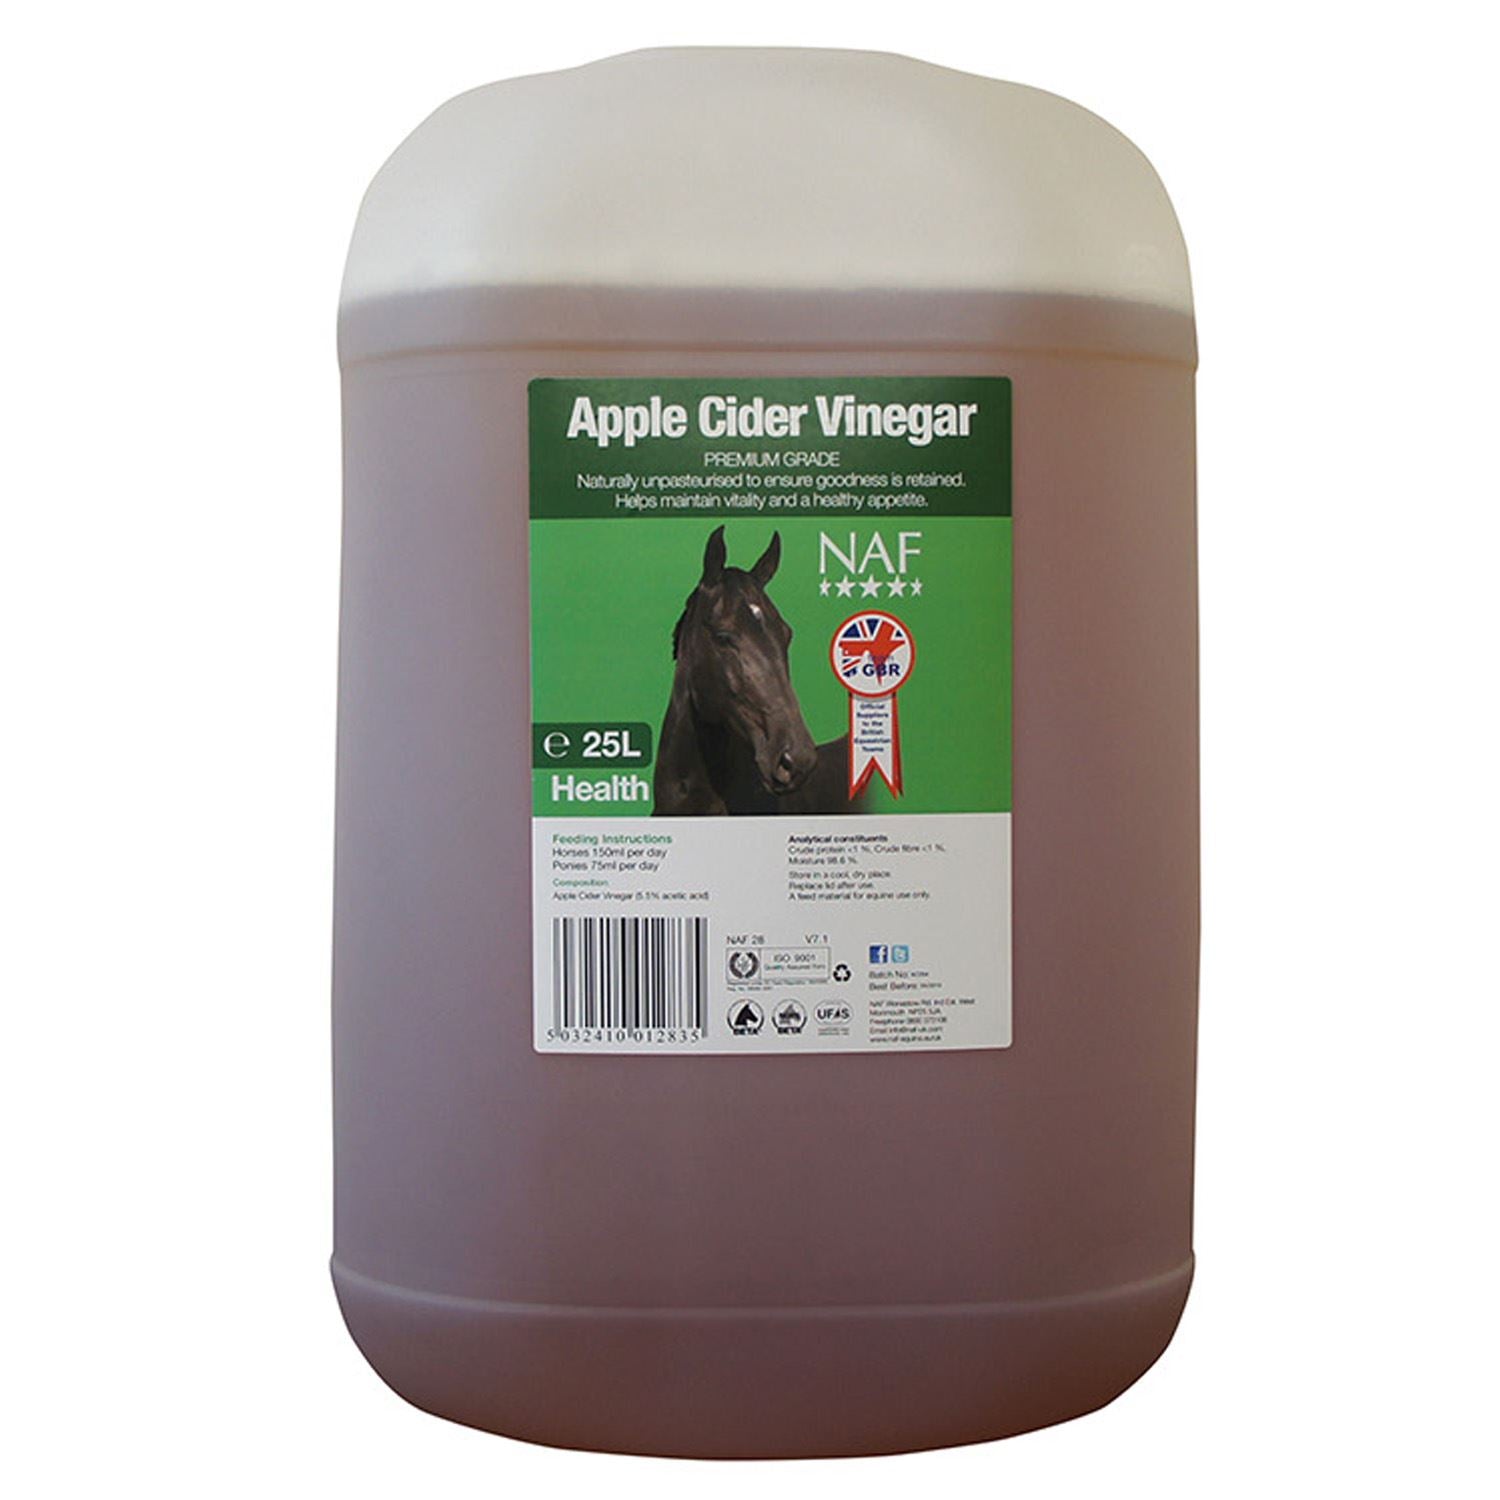 NAF Apple Cider Vinegar - Just Horse Riders